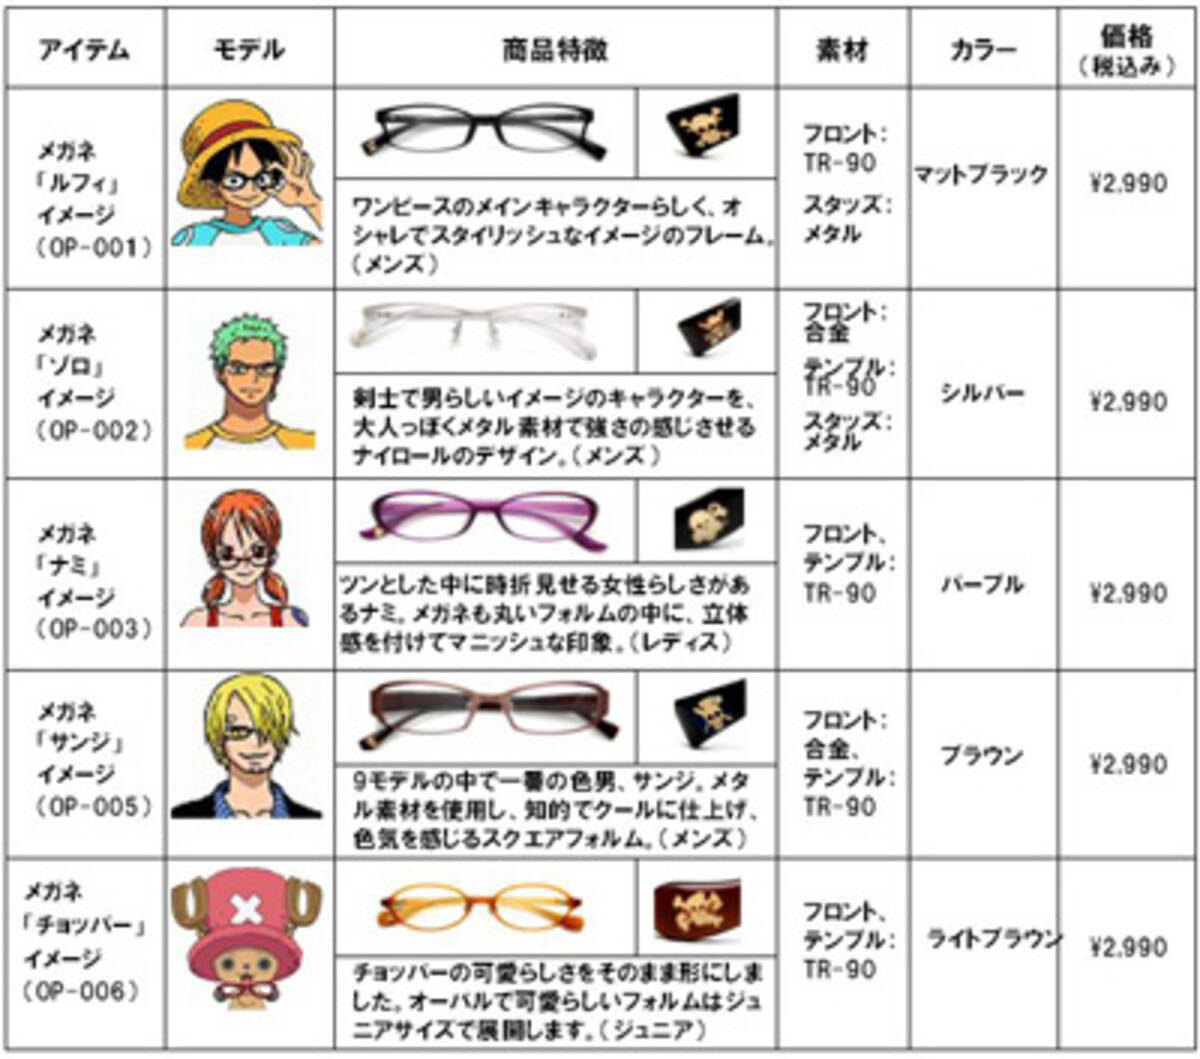 ファミチキ半額キャンペーン記念 アニメ ワンピース の数量限定メガネをプレゼント エキサイトニュース